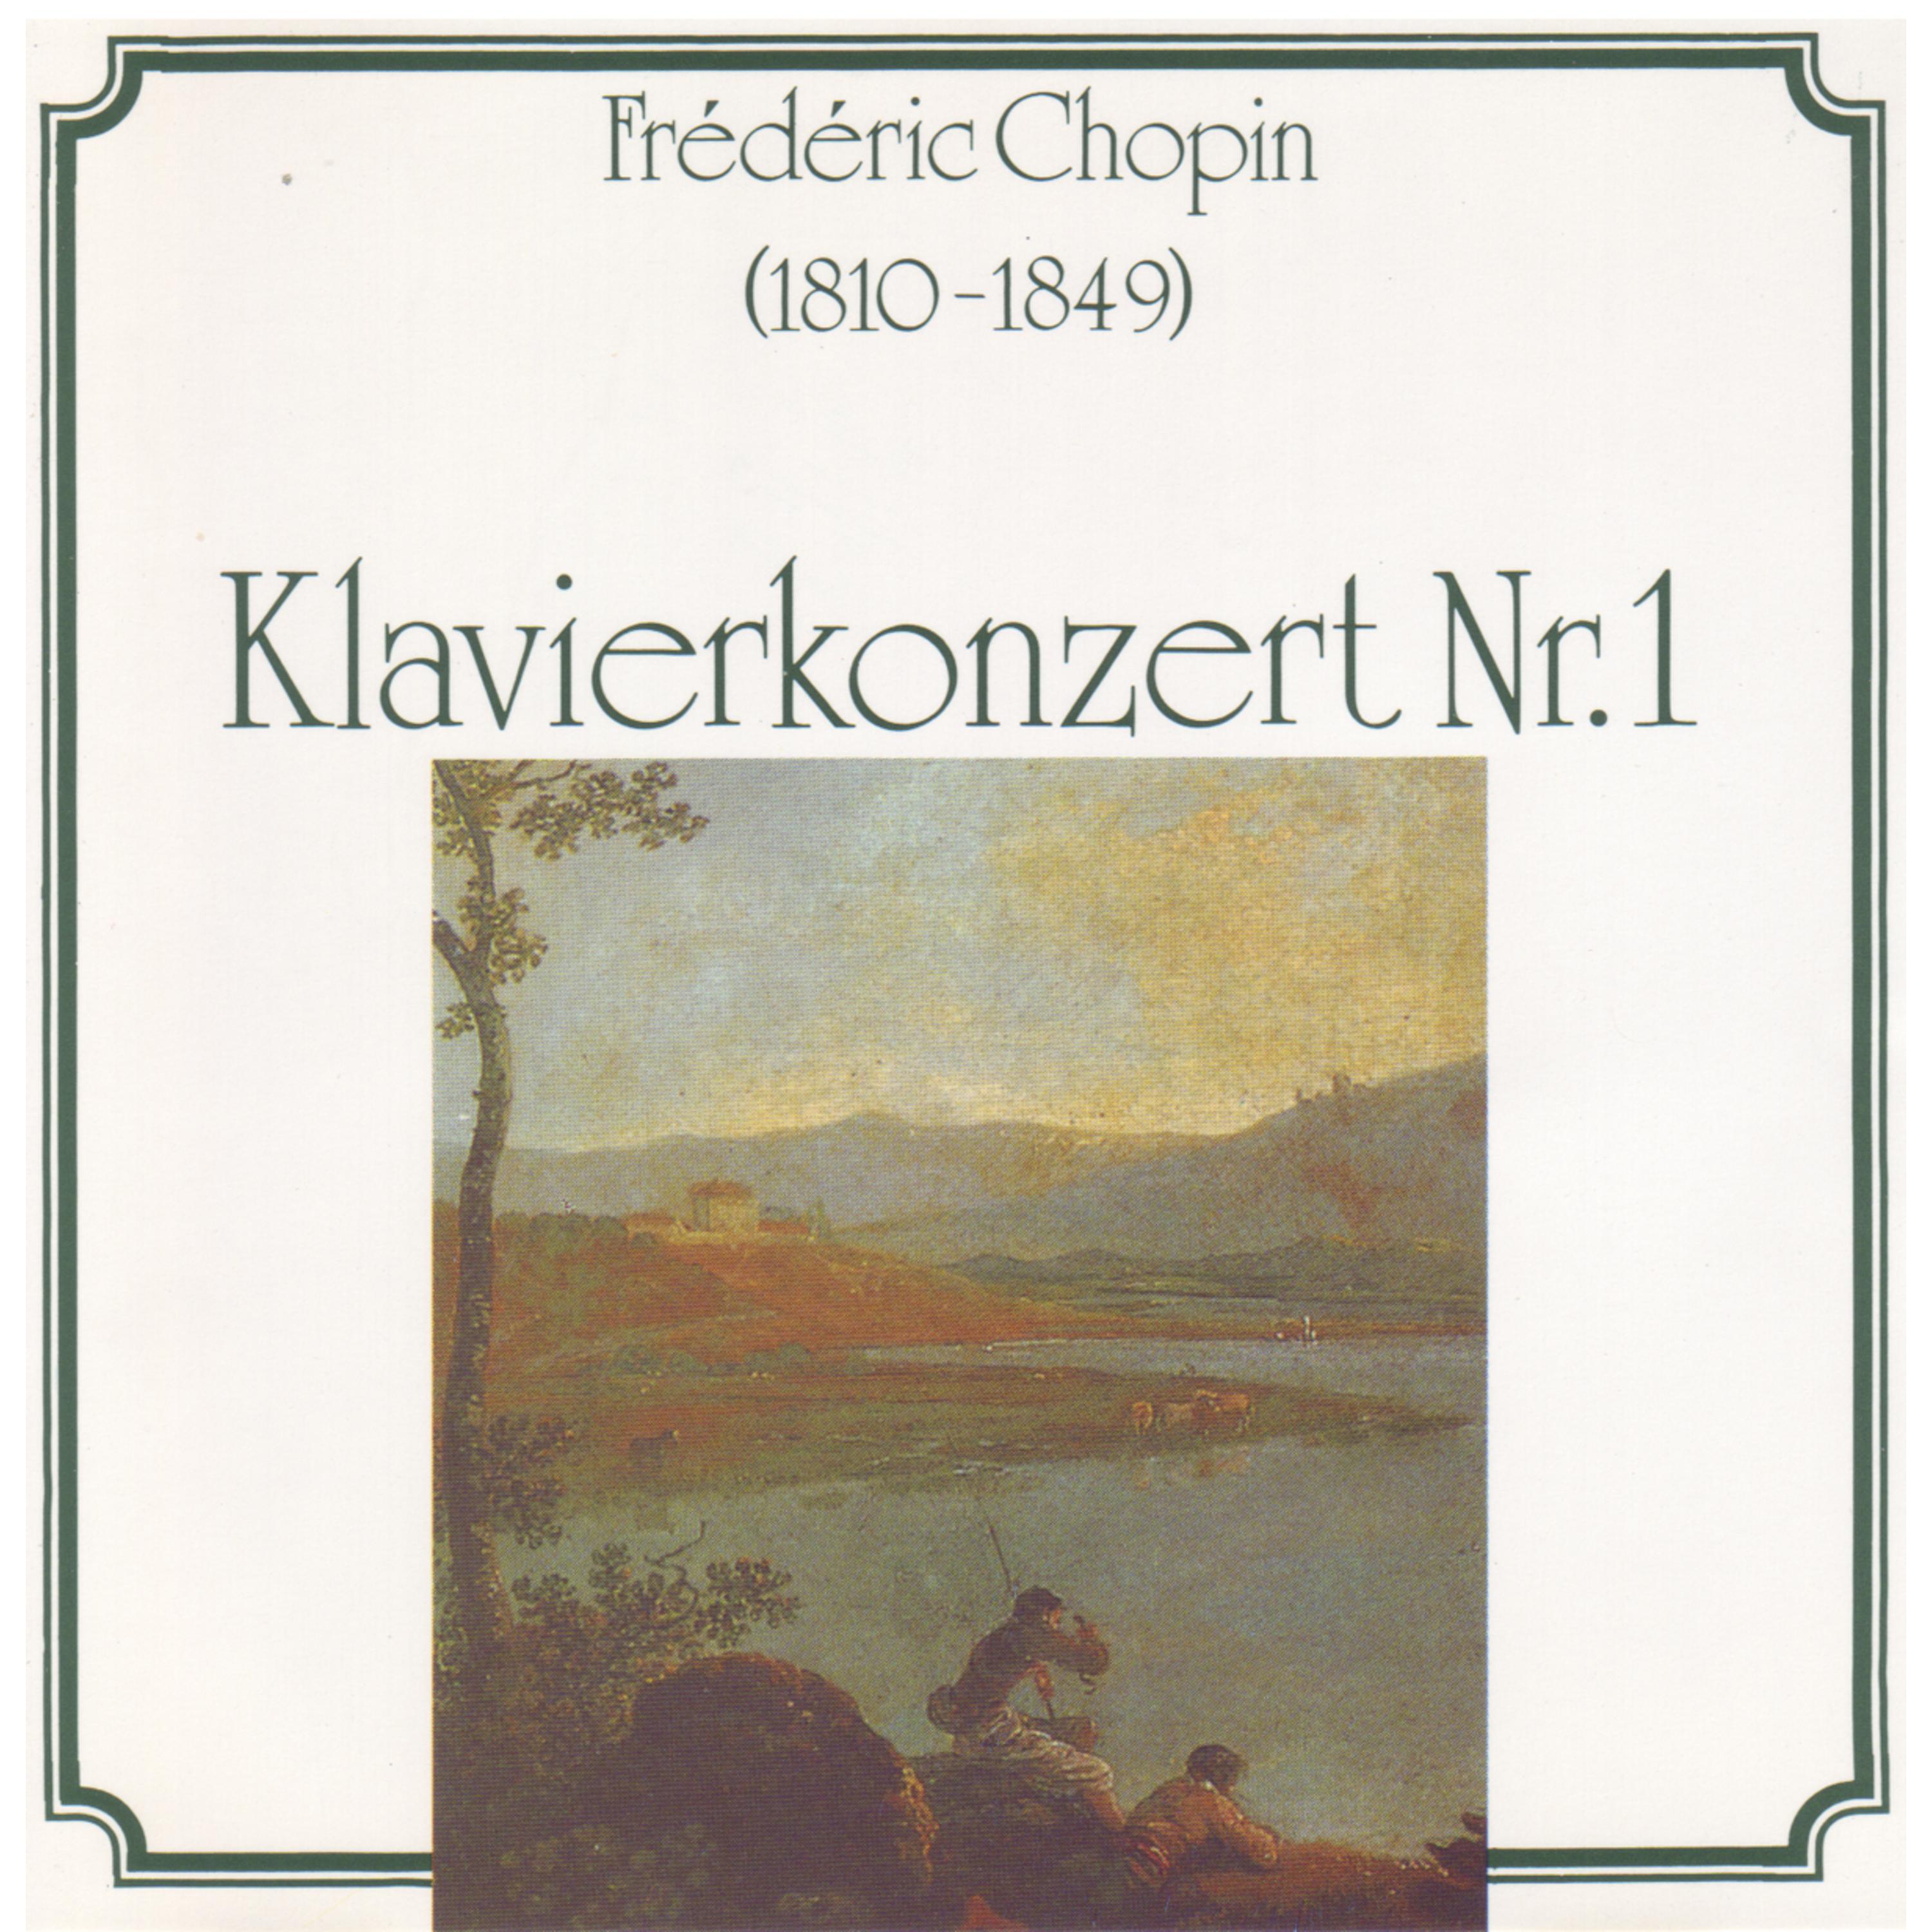 Pre lude fü r Klavier in EFlat Minor, Op. 28, No. 14